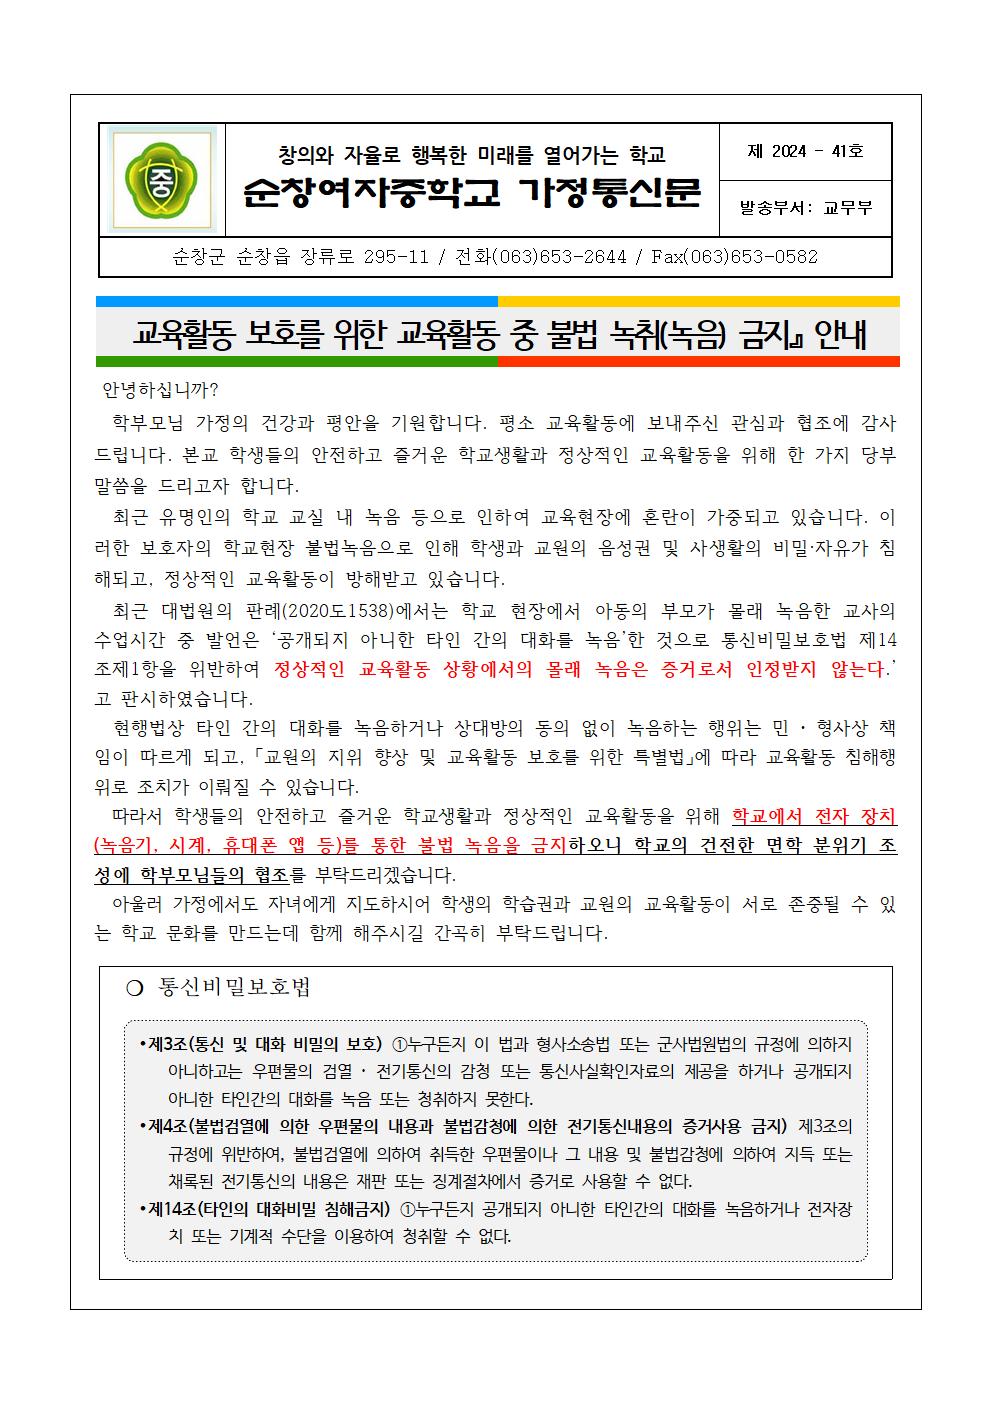 교육활동 중 불법 녹취(녹음) 금지 안내 협조 가정통신문001